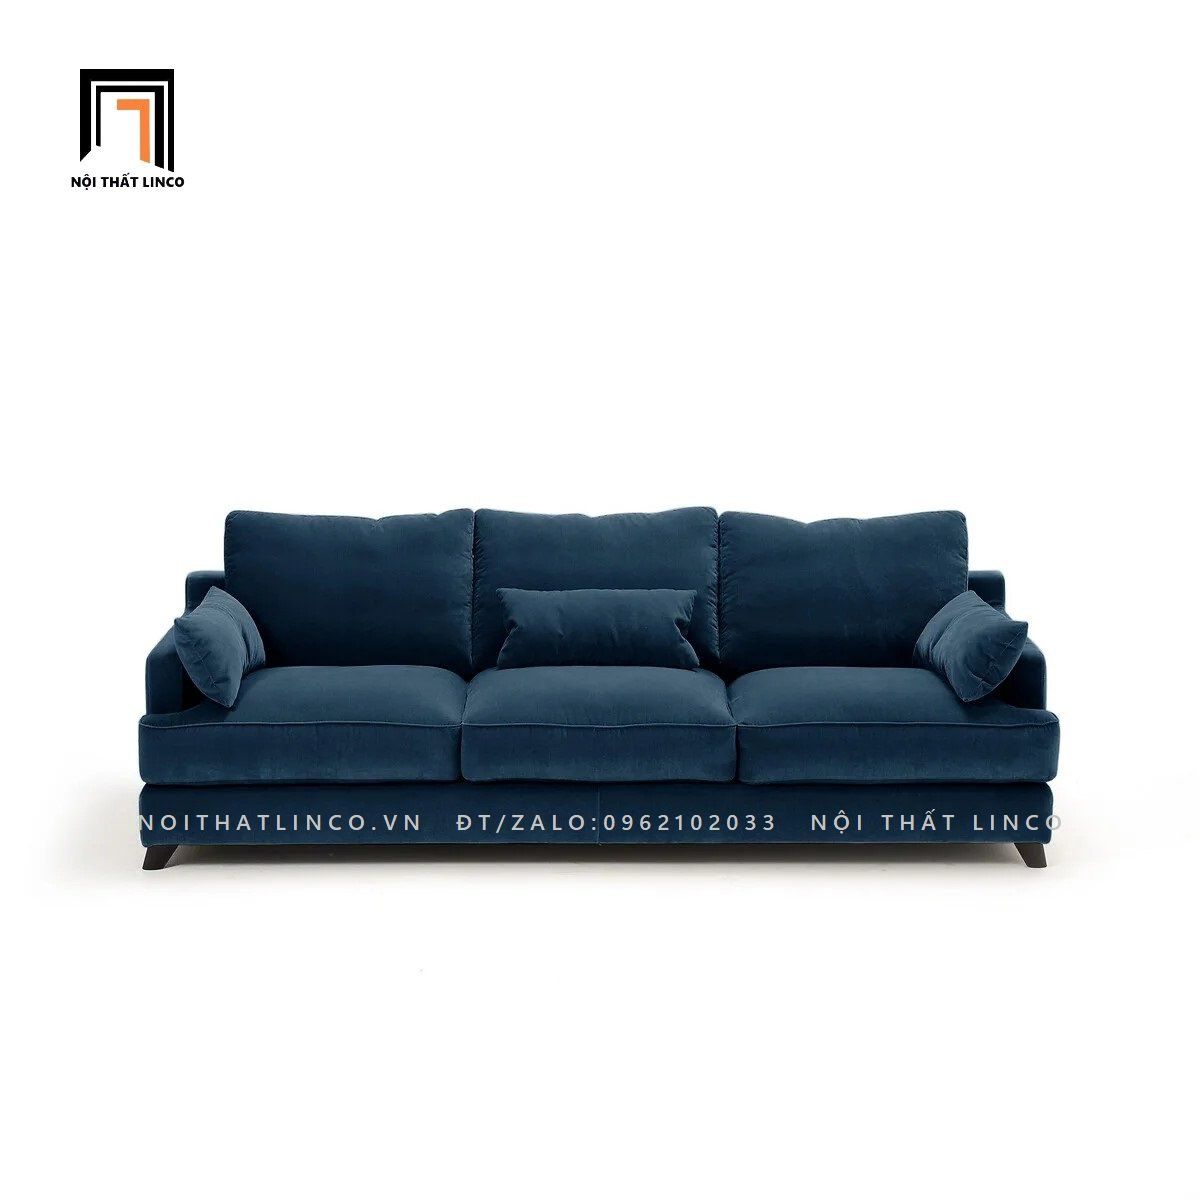  Ghế sofa băng sang trọng BT92 Alwine 2m1 phong cách Âu Mỹ 